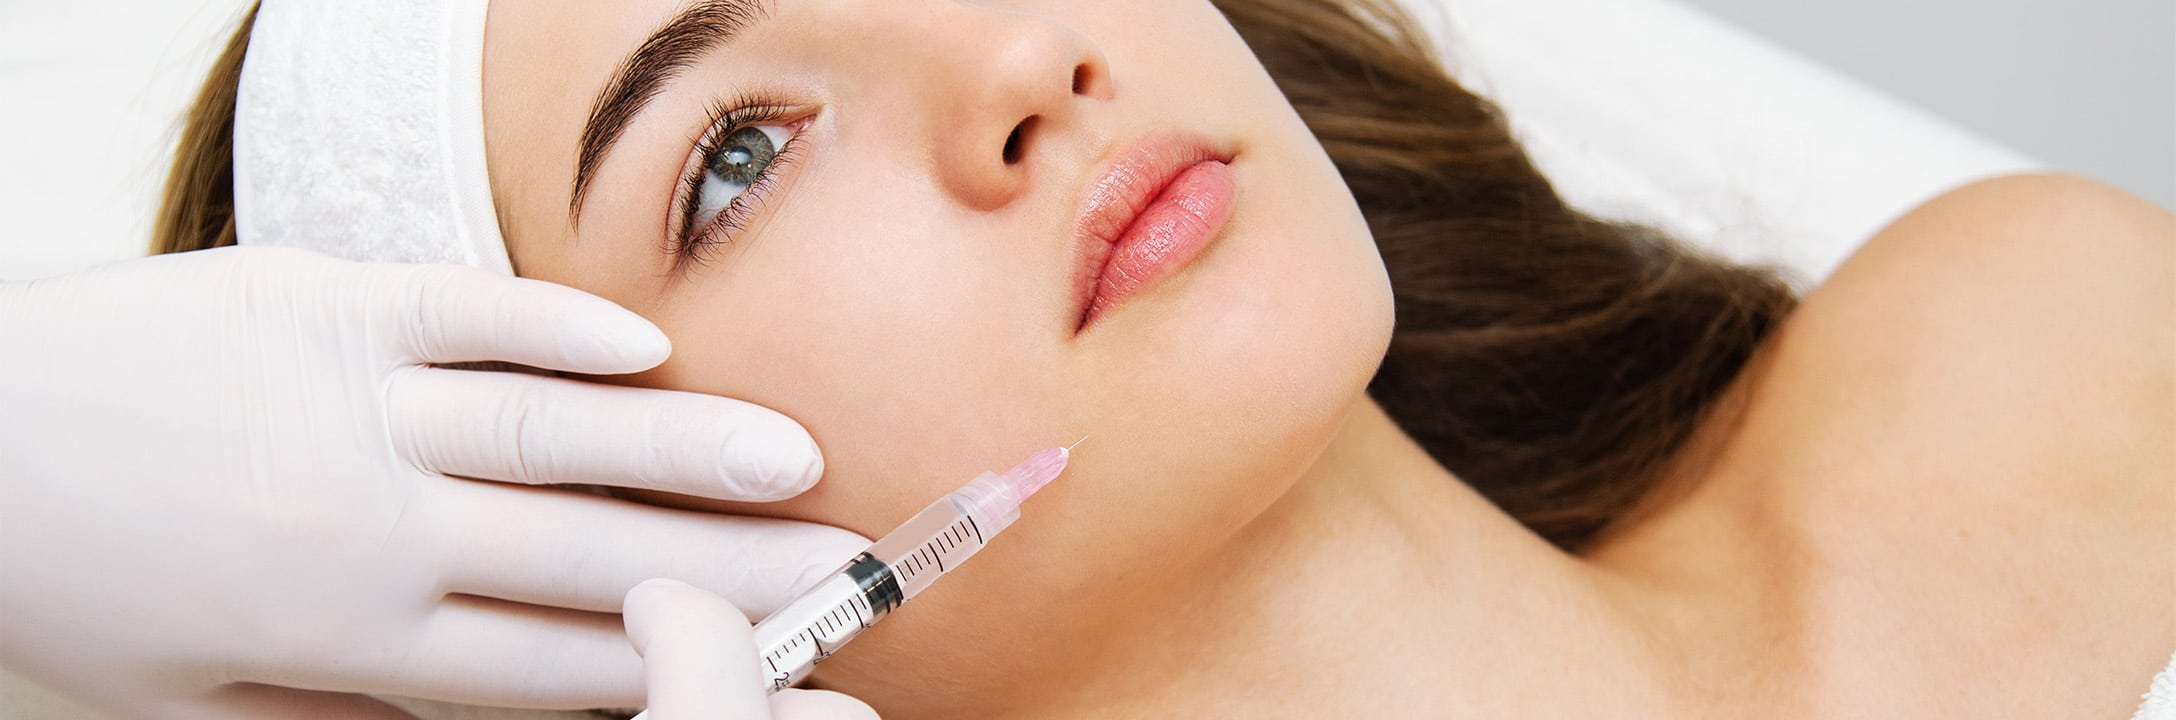 Combiner Botox et acide hyaluronique | Paris 16 | Dr Pecorelli